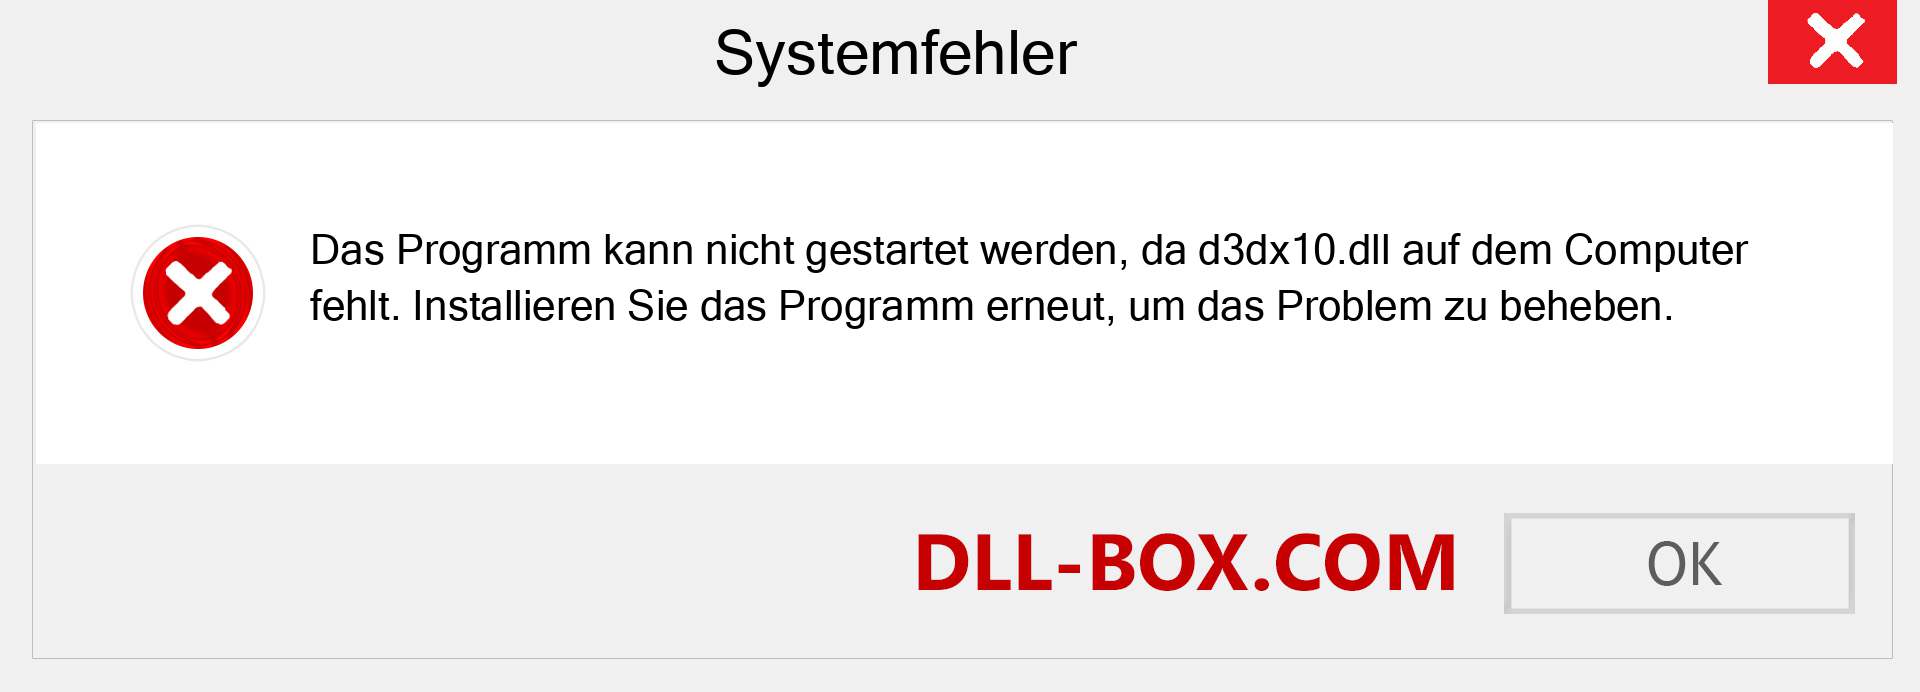 d3dx10.dll-Datei fehlt?. Download für Windows 7, 8, 10 - Fix d3dx10 dll Missing Error unter Windows, Fotos, Bildern